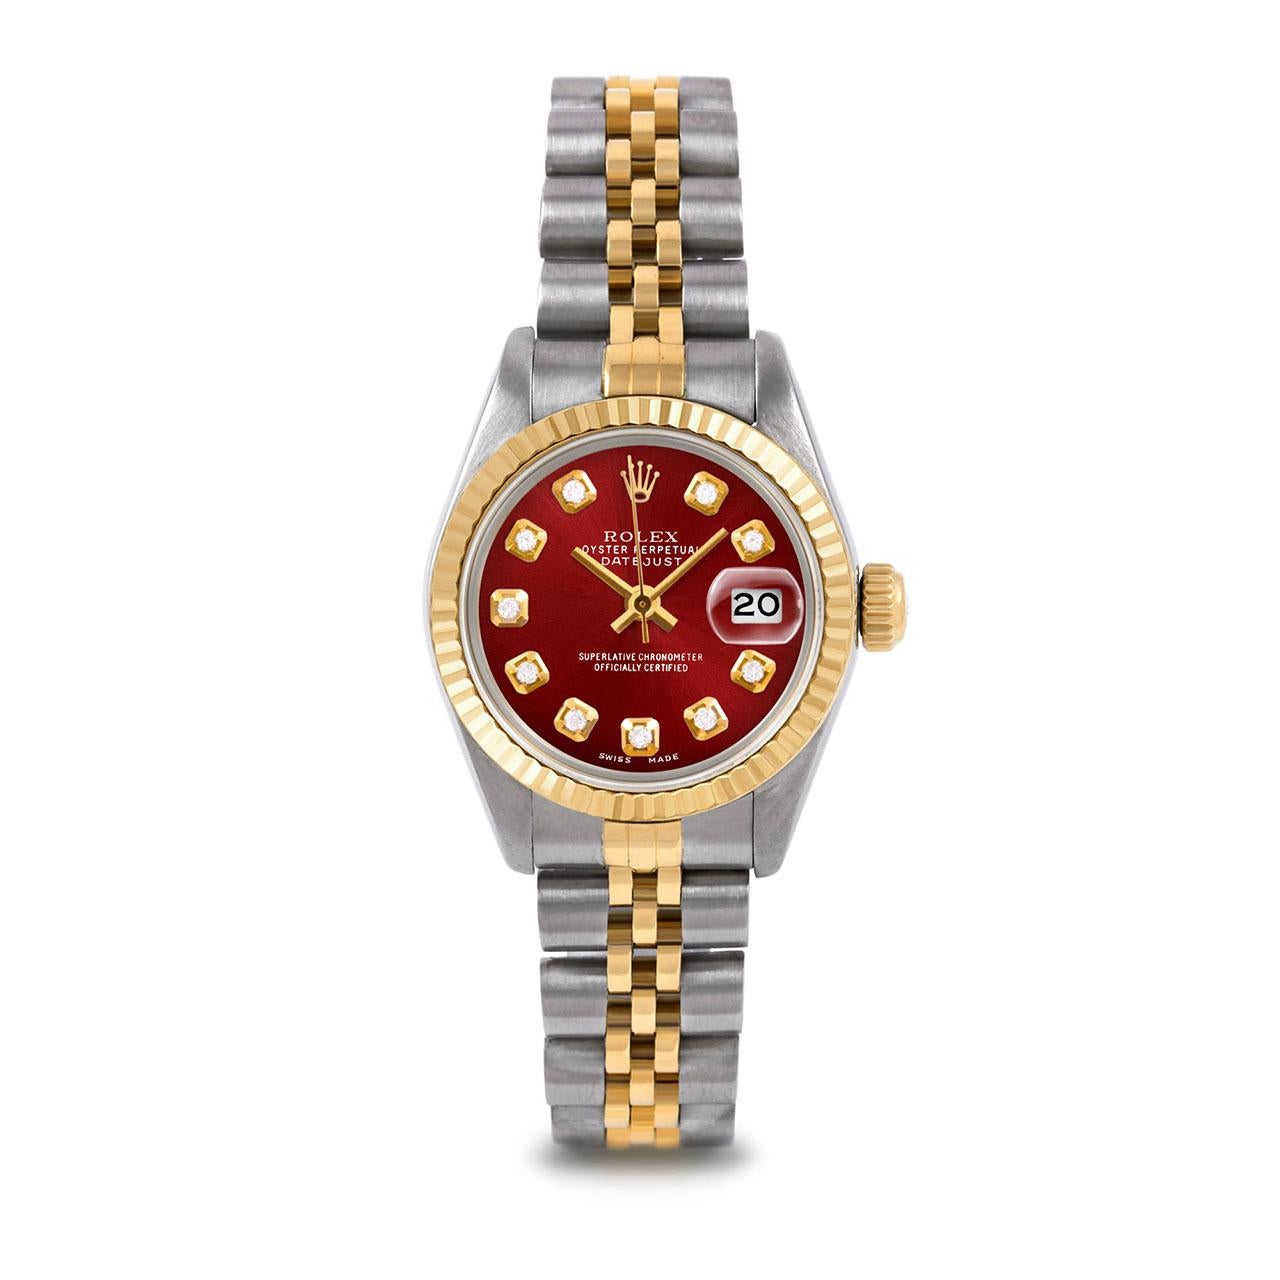 Montre Rolex 6917 26mm Two Tone Datejust pour femme, cadran personnalisé en diamants rouges et lunette cannelée sur bracelet jubilé en or jaune 14K et acier inoxydable.   

SKU 6917-TT-RED-DIA-AM-FLT-JBL


Marque/Modèle :        Rolex